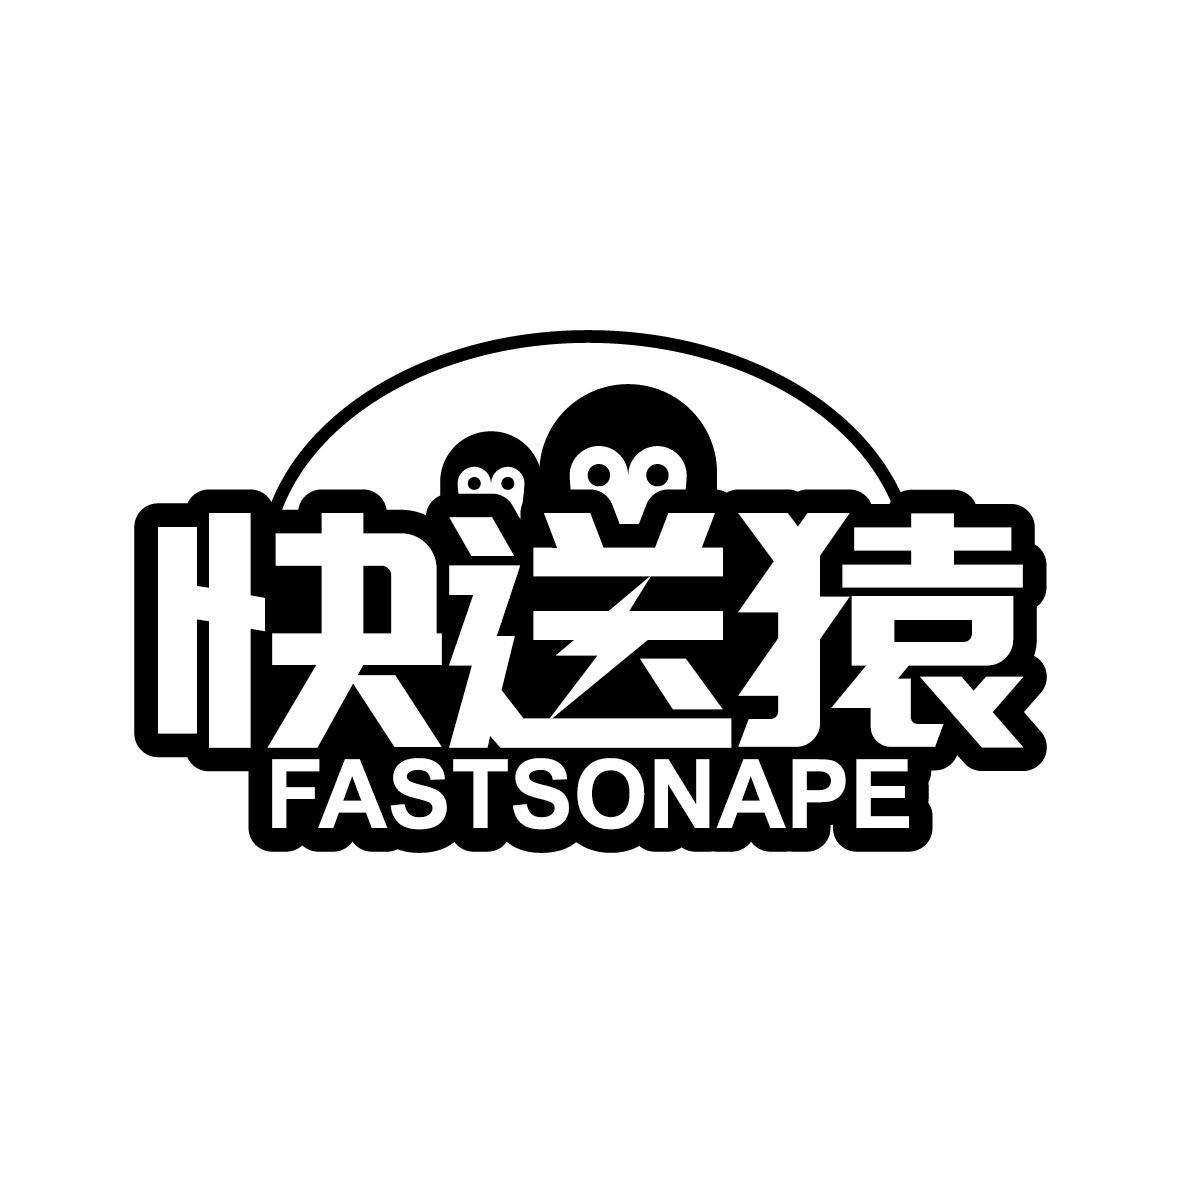 39类-运输旅行快送猿 FASTSONAPE商标转让